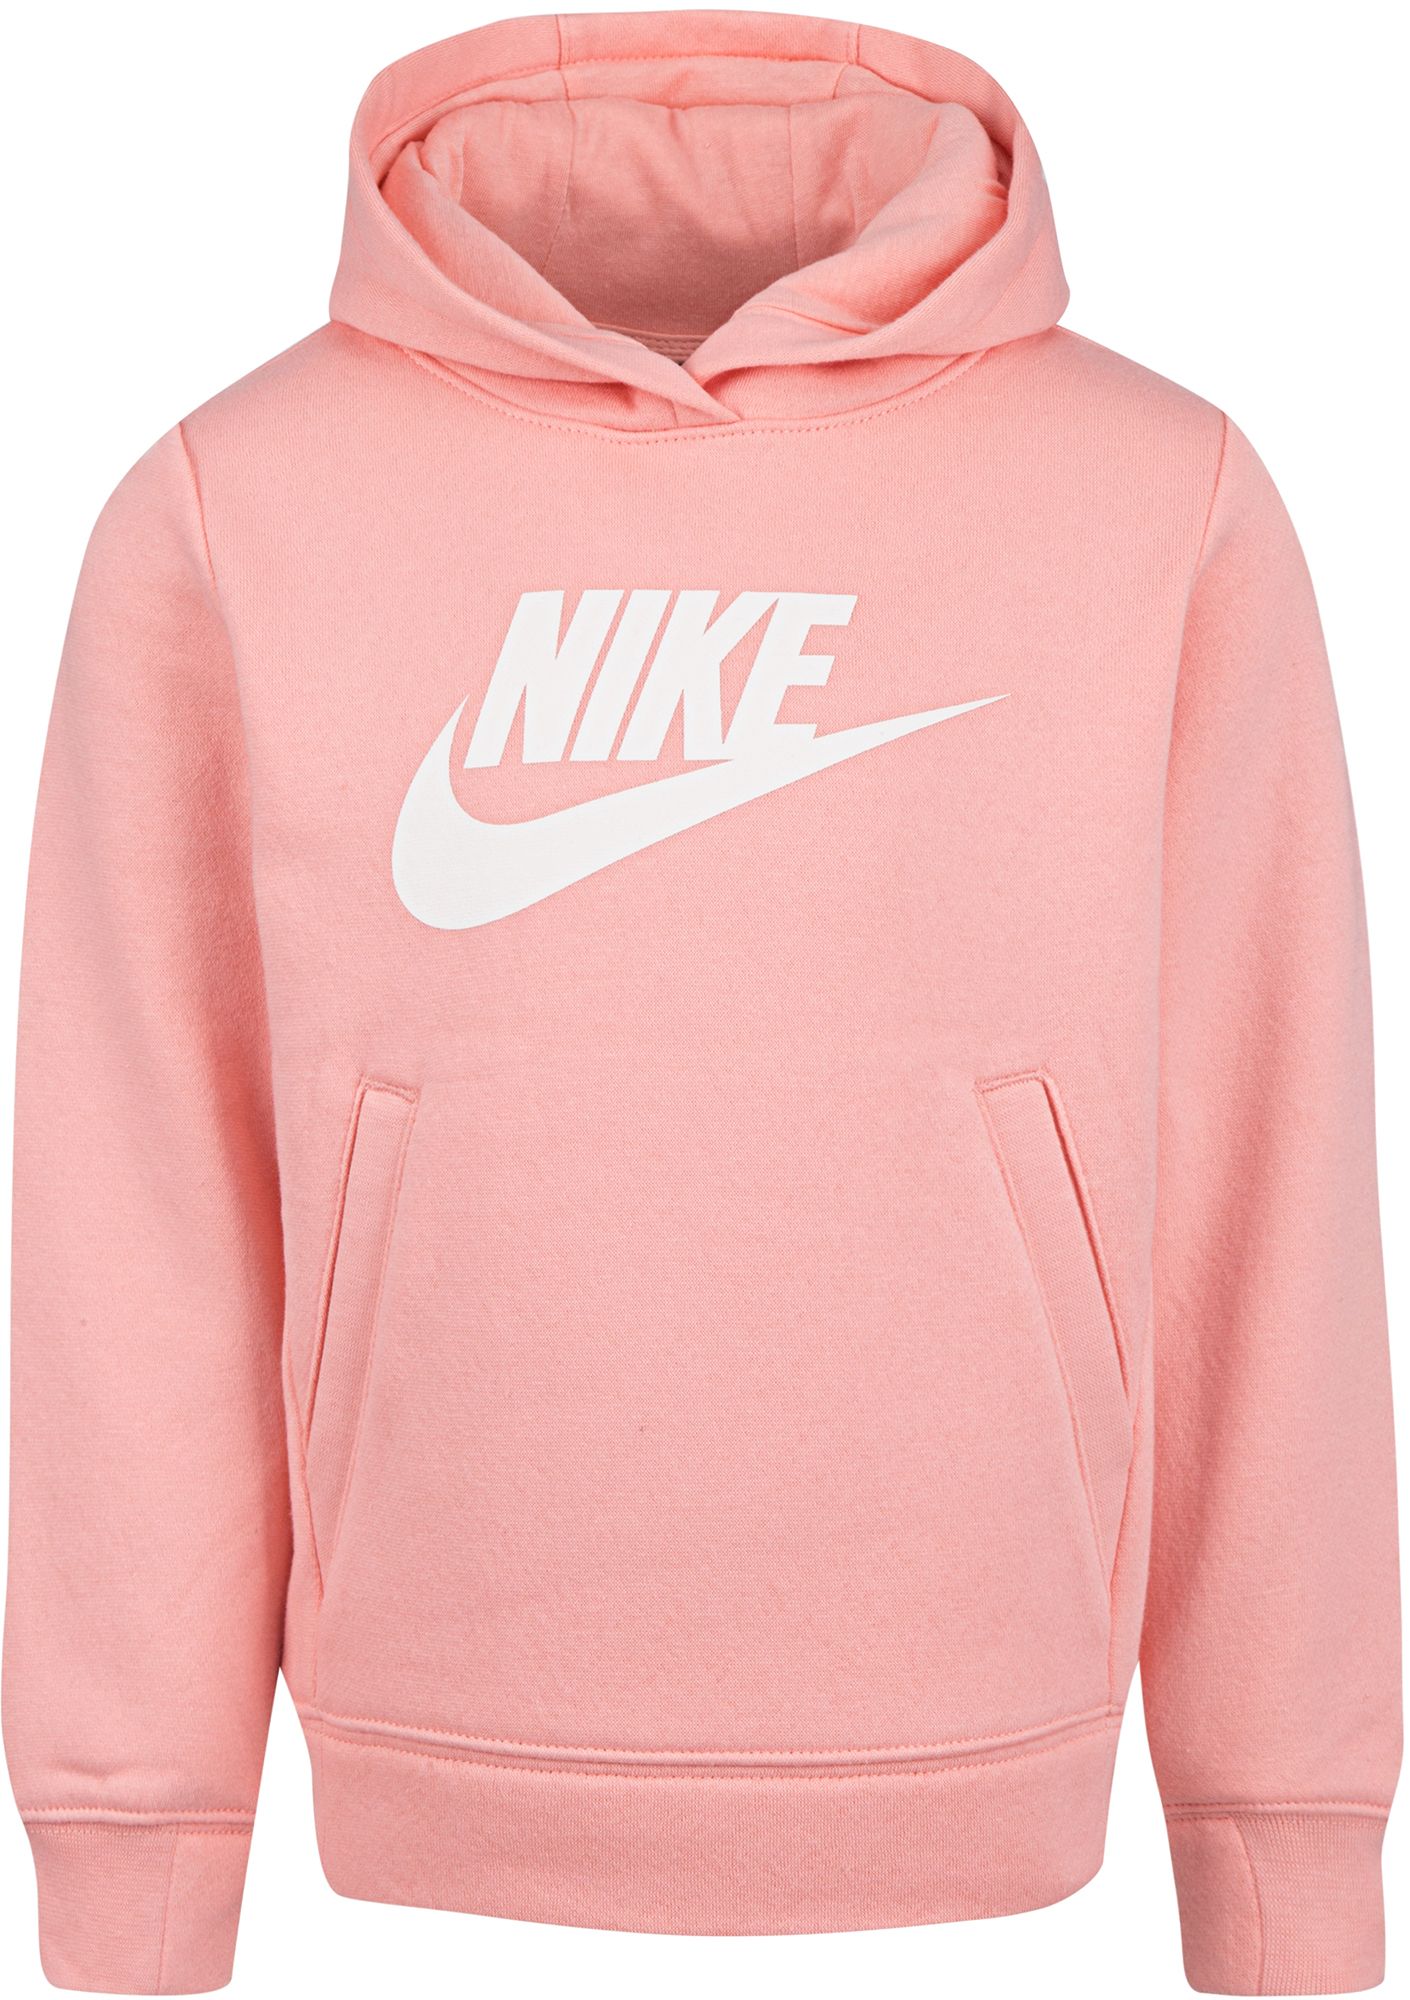 nike hoodie blue and pink sleeve